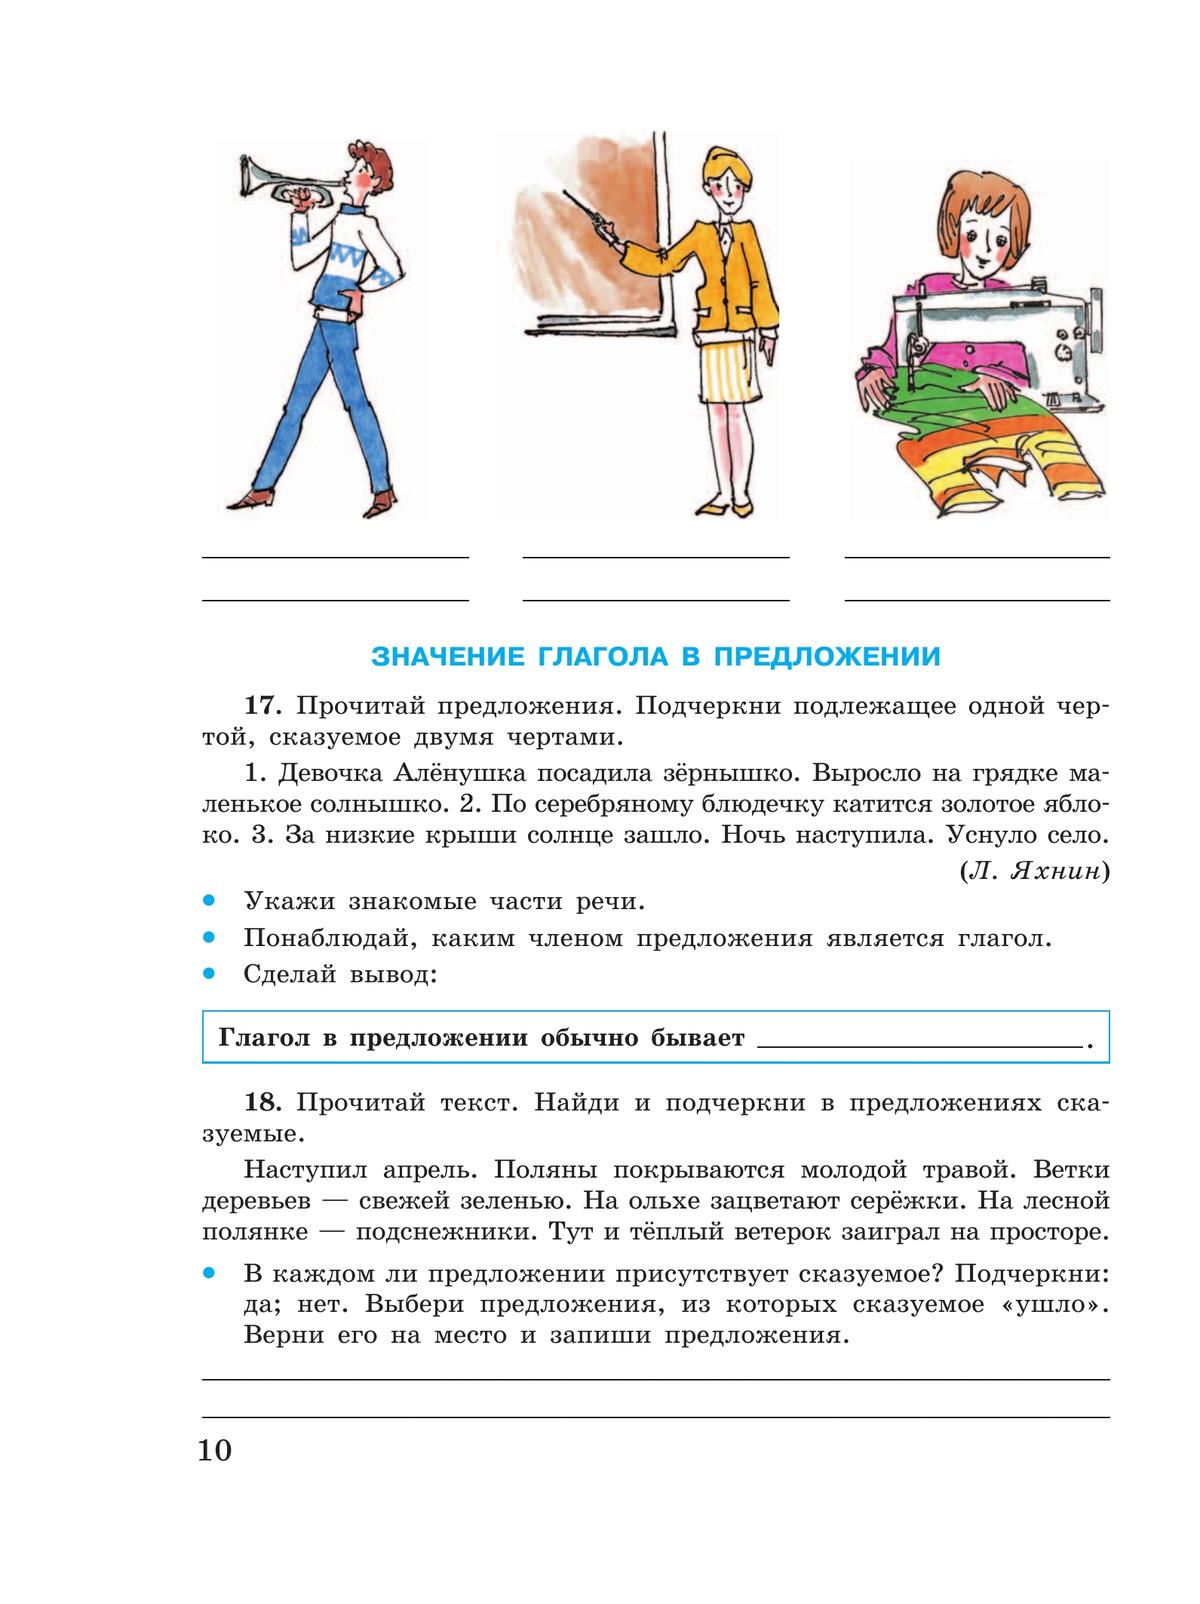 Русский язык. Глагол. 5-9 классы. Рабочая тетрадь 4 (для обучающихся с интеллектуальными нарушениями) 7